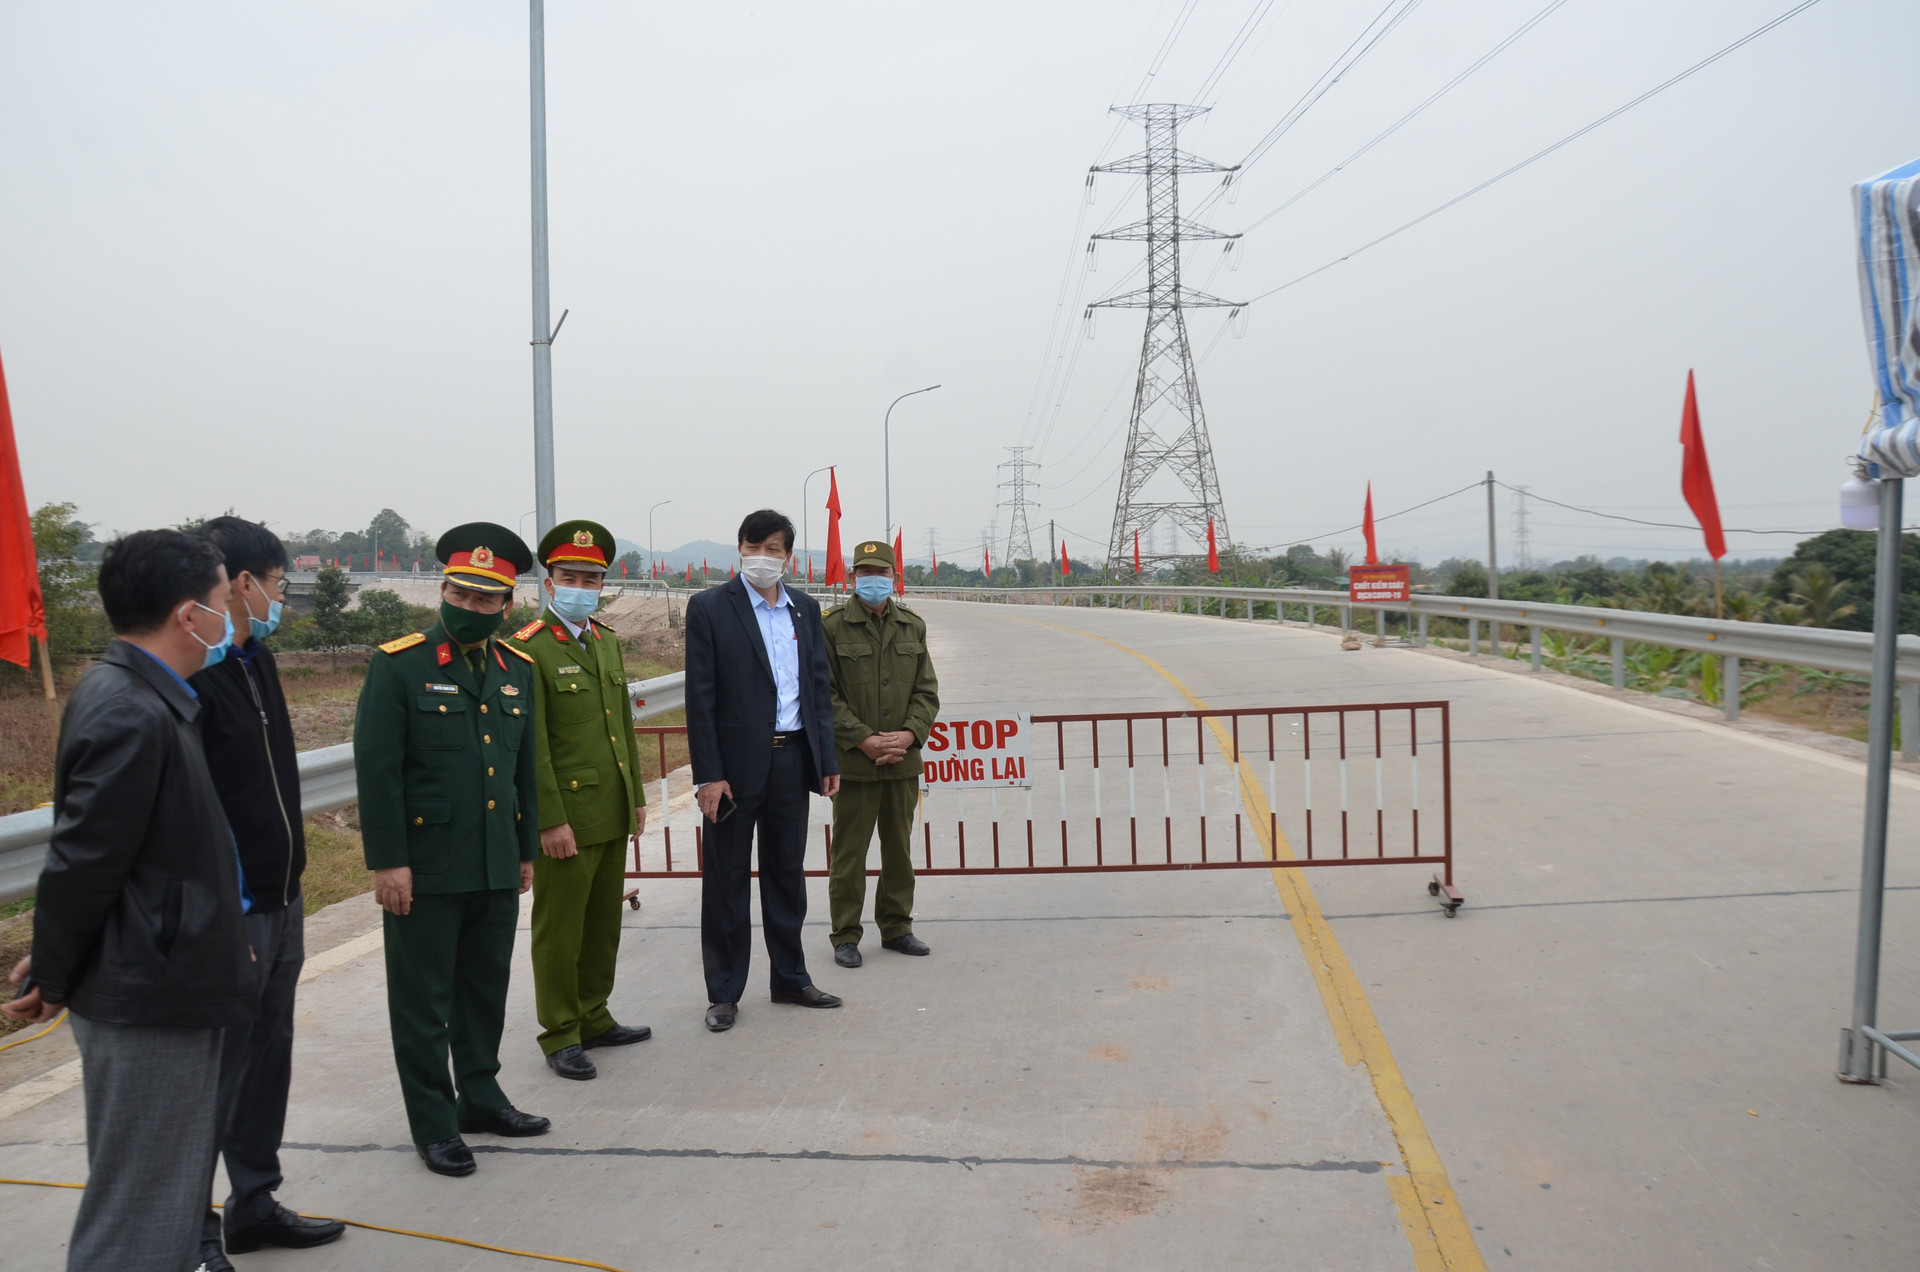 UBND tỉnh Quảng Ninh đã cử Tổ công tác phản ứng nhanh đến TX Đông Triều để hỗ trợ Ban Chỉ đạo phòng, chống dịch Covid-19 